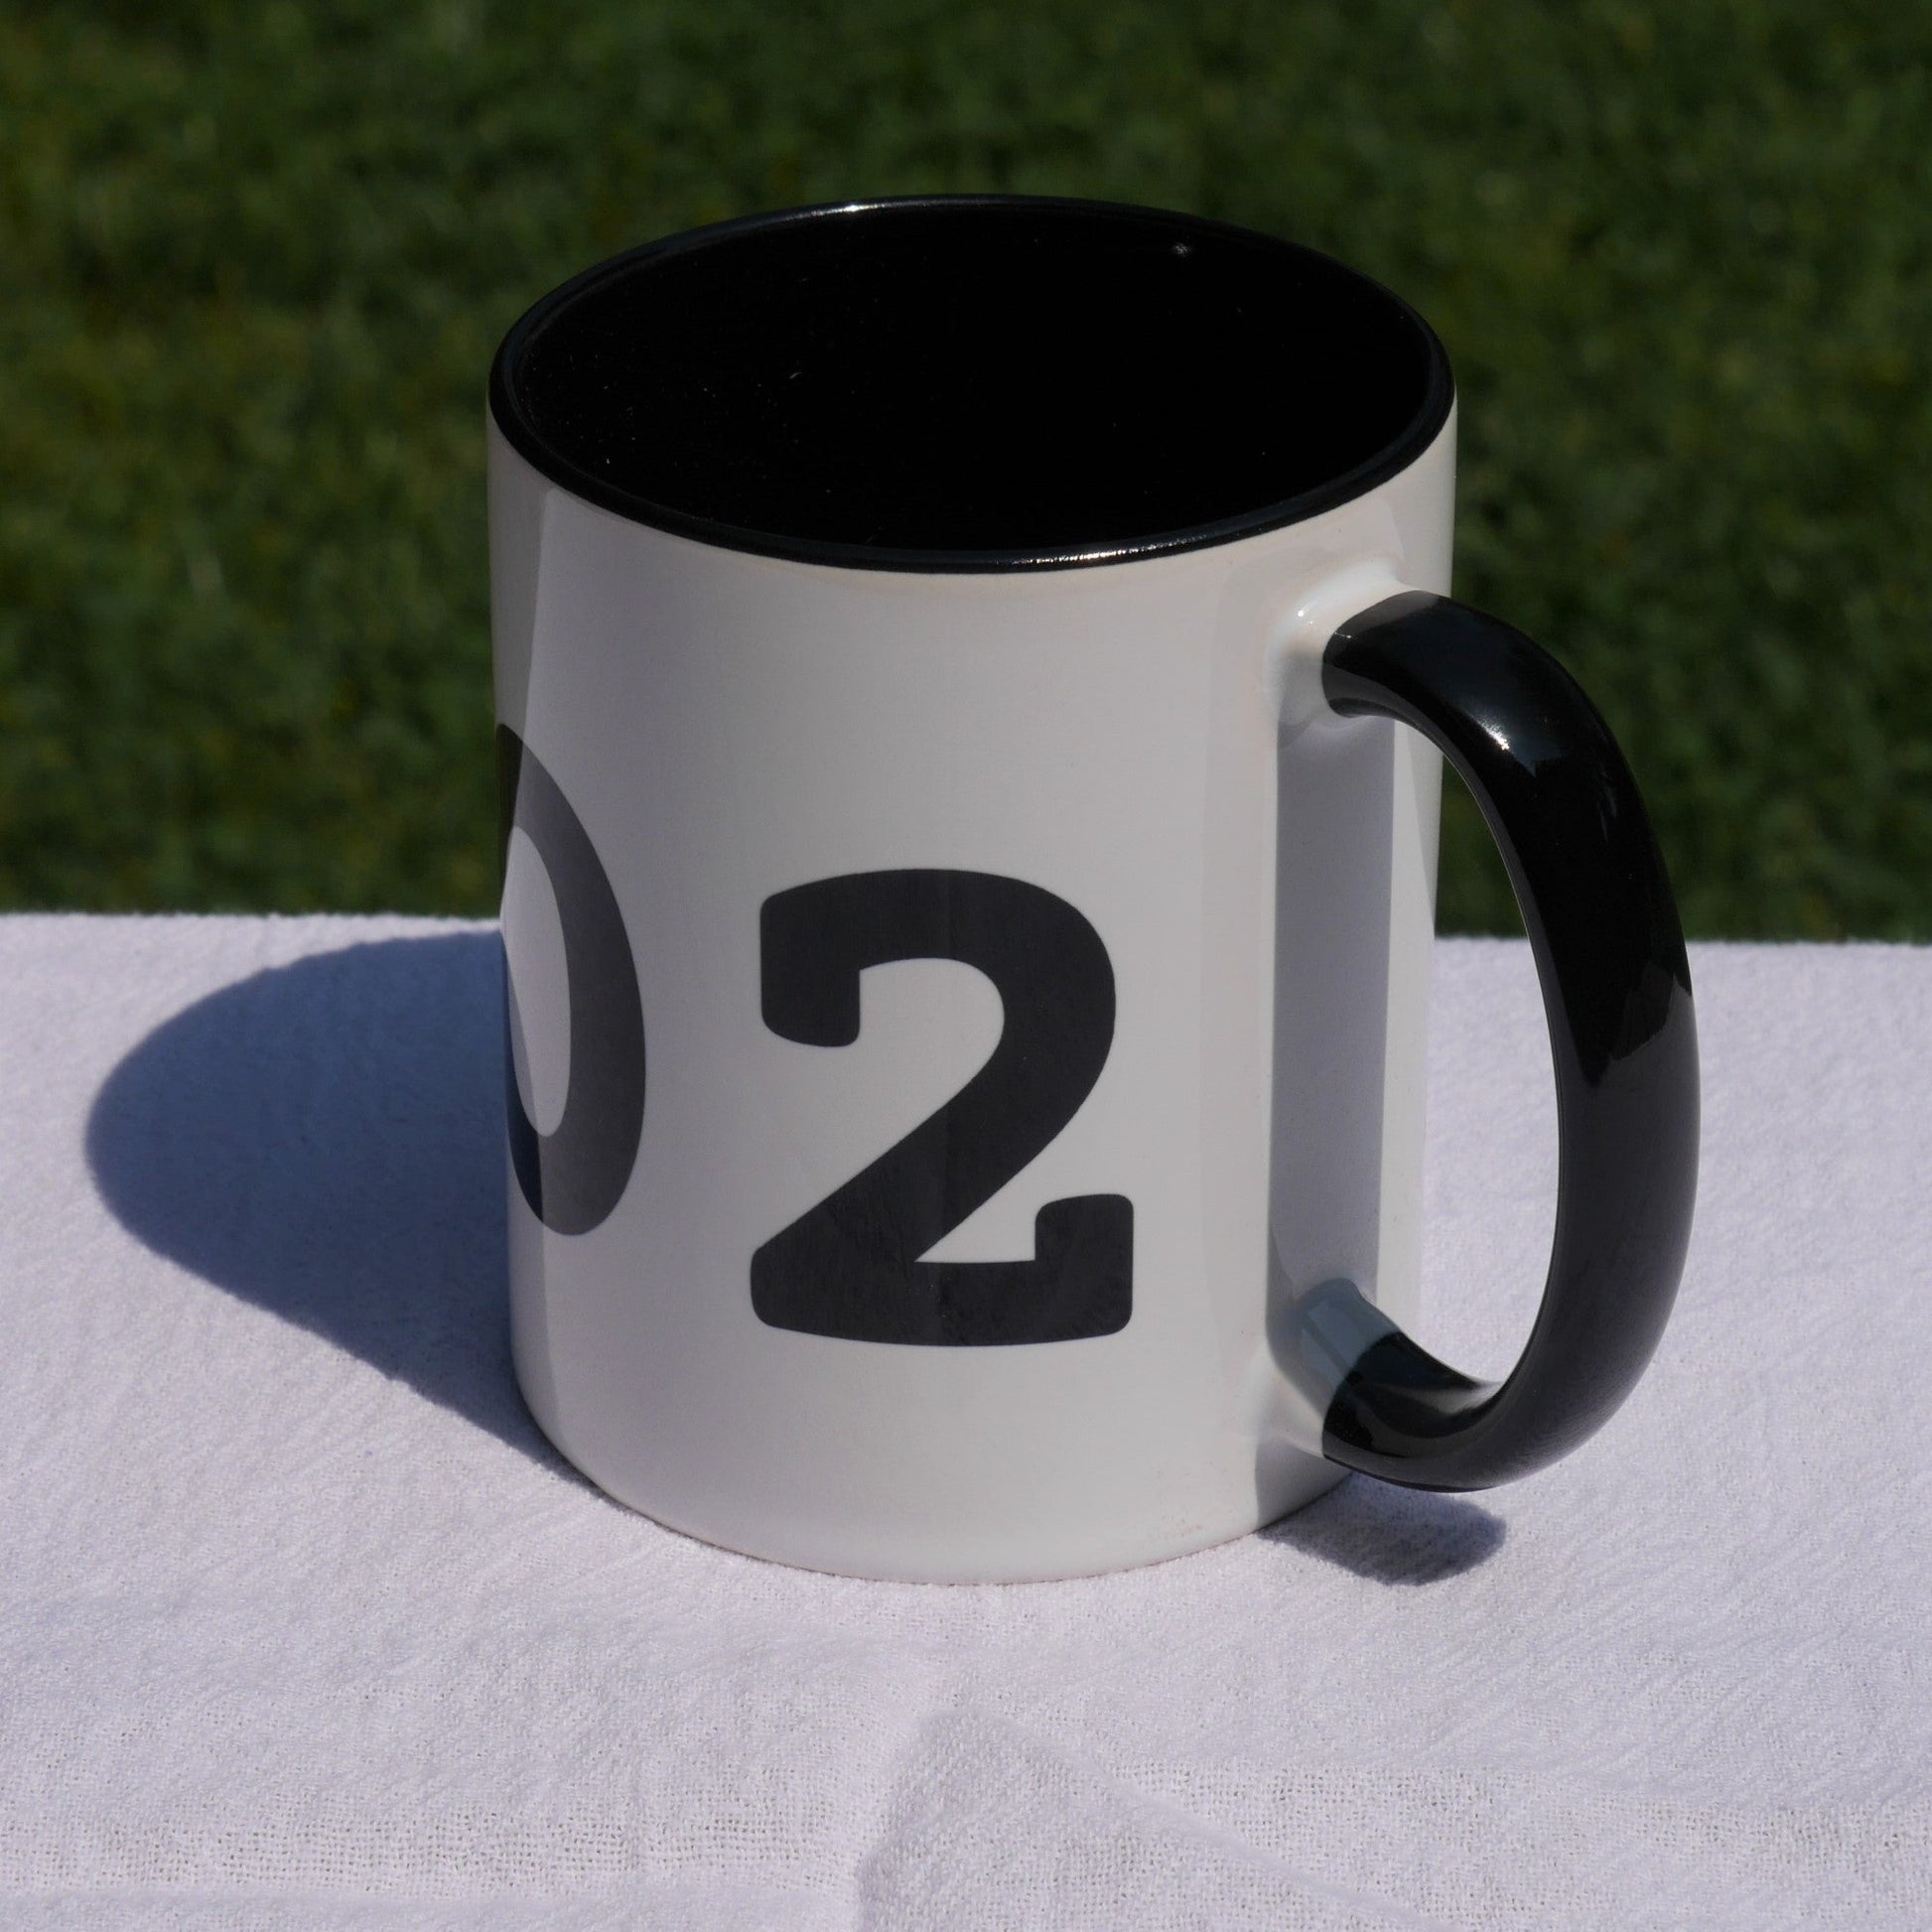 Aviation-Theme Coffee Mug - Black • YZR Sarnia • YHM Designs - Image 06